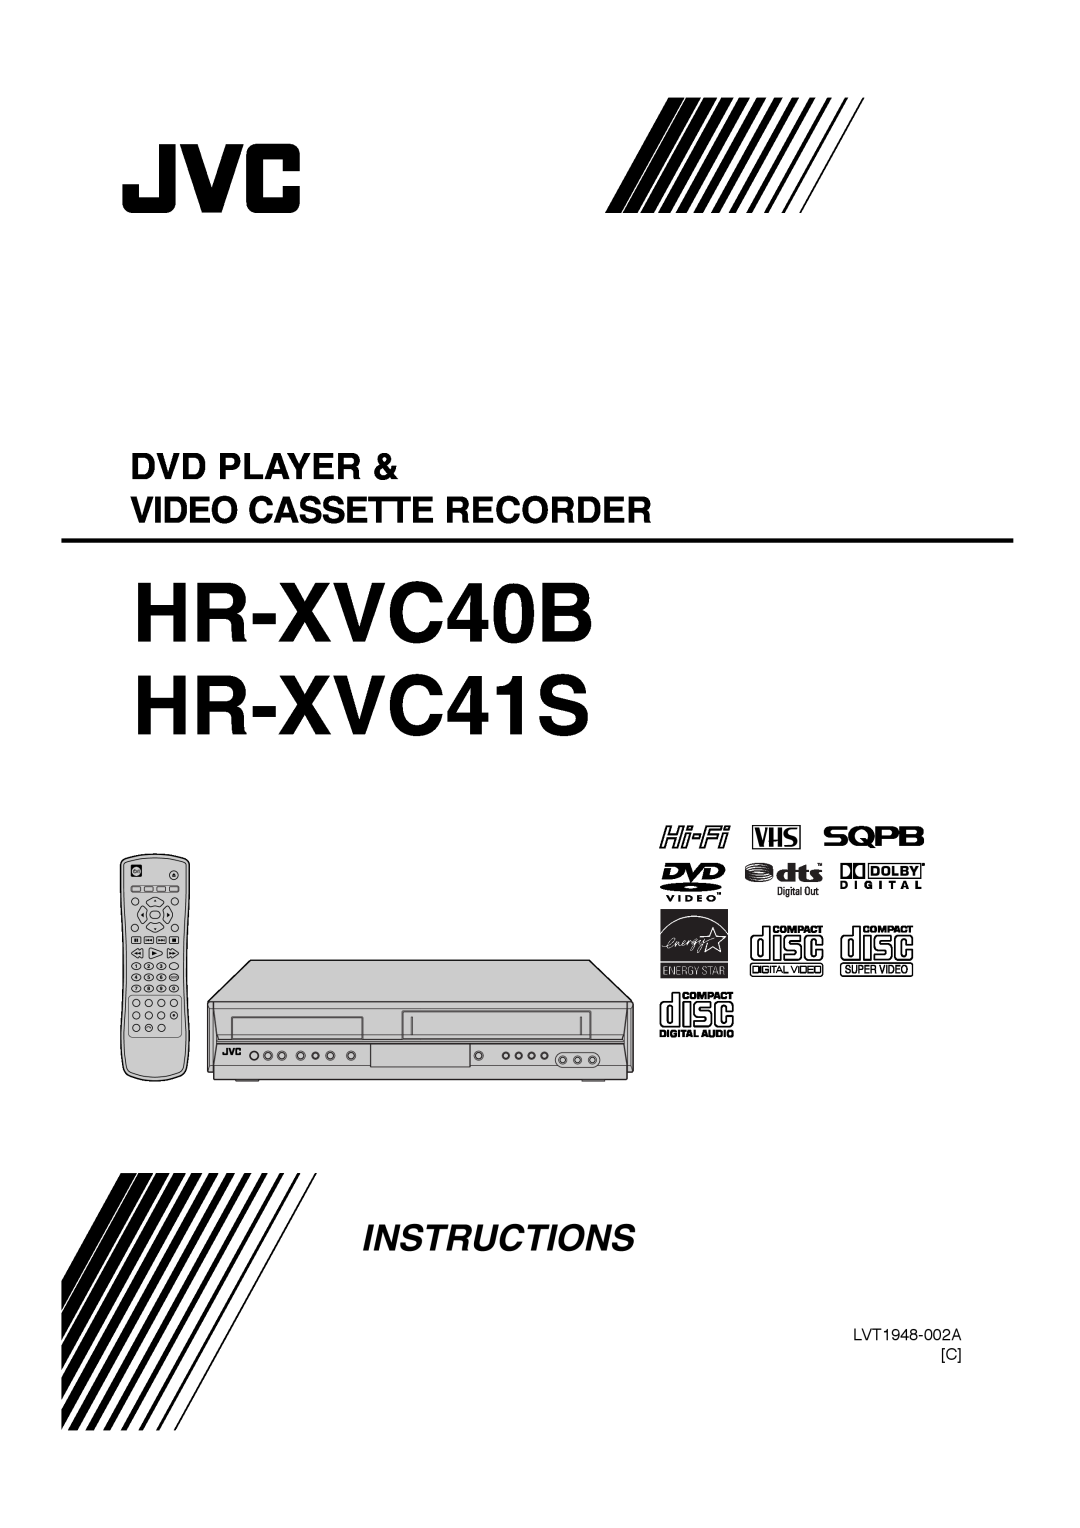 JVC manual Dvd Player Video Cassette Recorder, HR-XVC40B HR-XVC41S, Instructions 